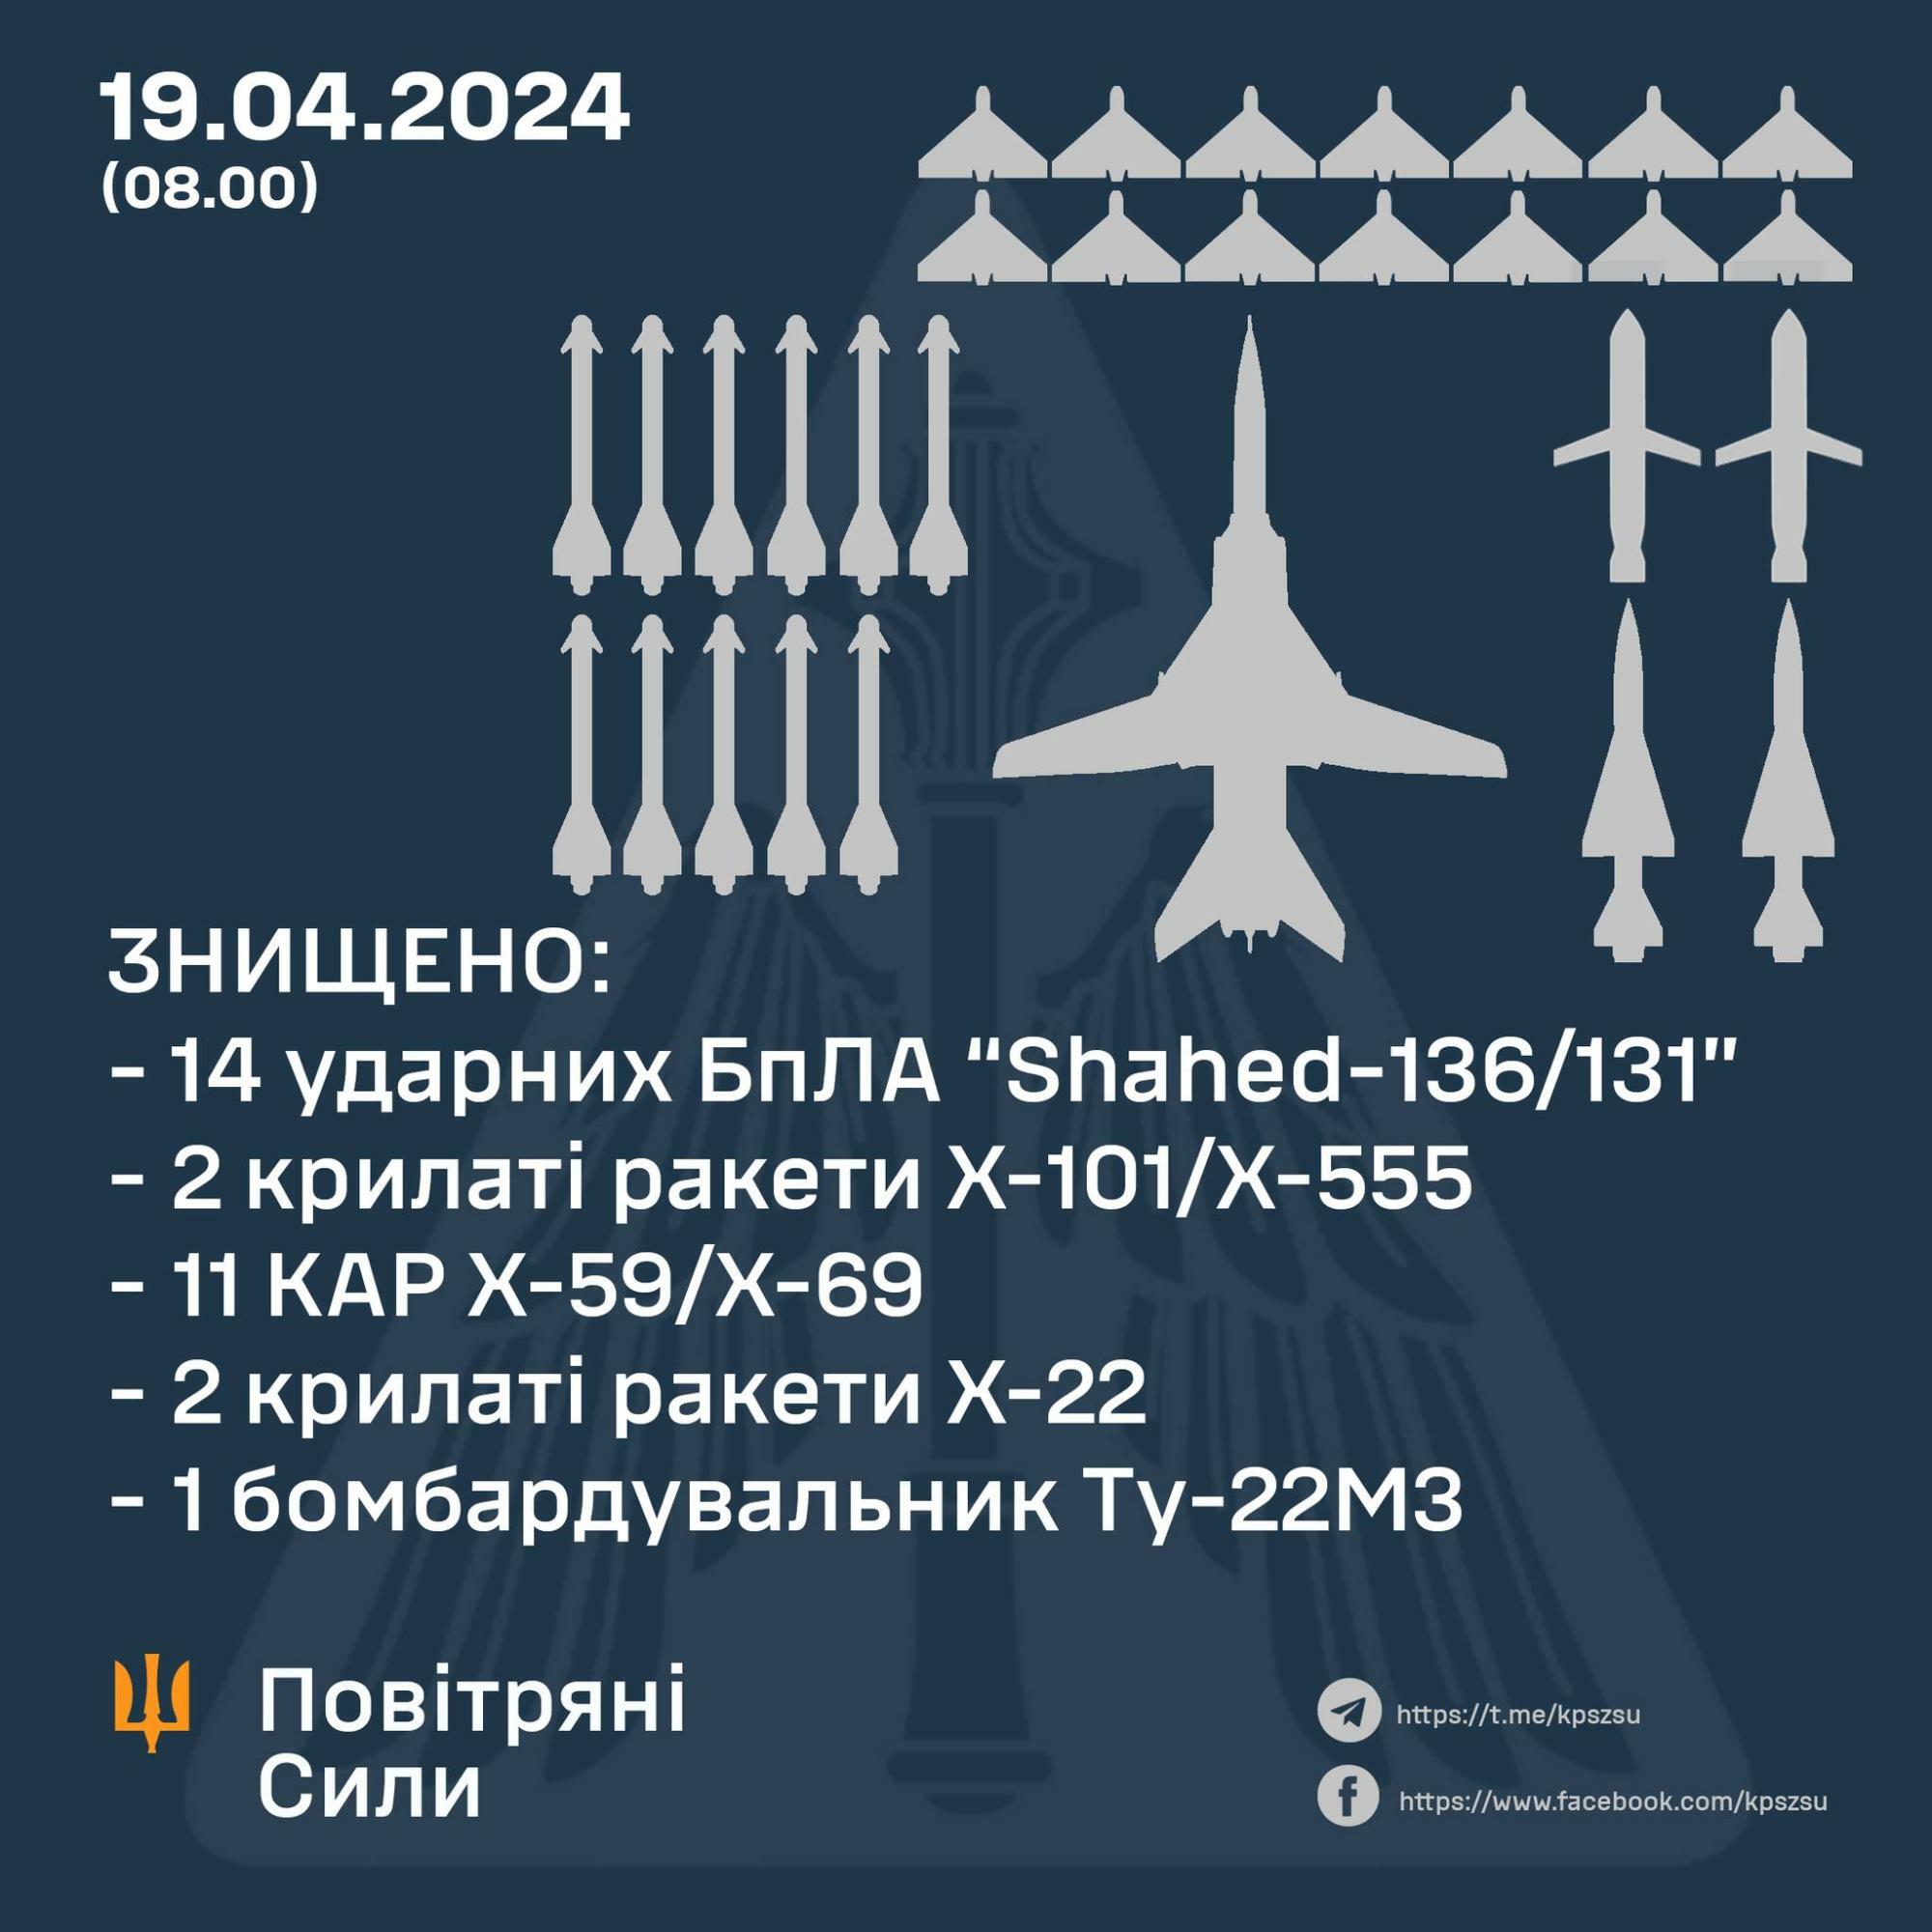 ウクライナ空軍司令部より2024年4月19日撃墜戦果報告